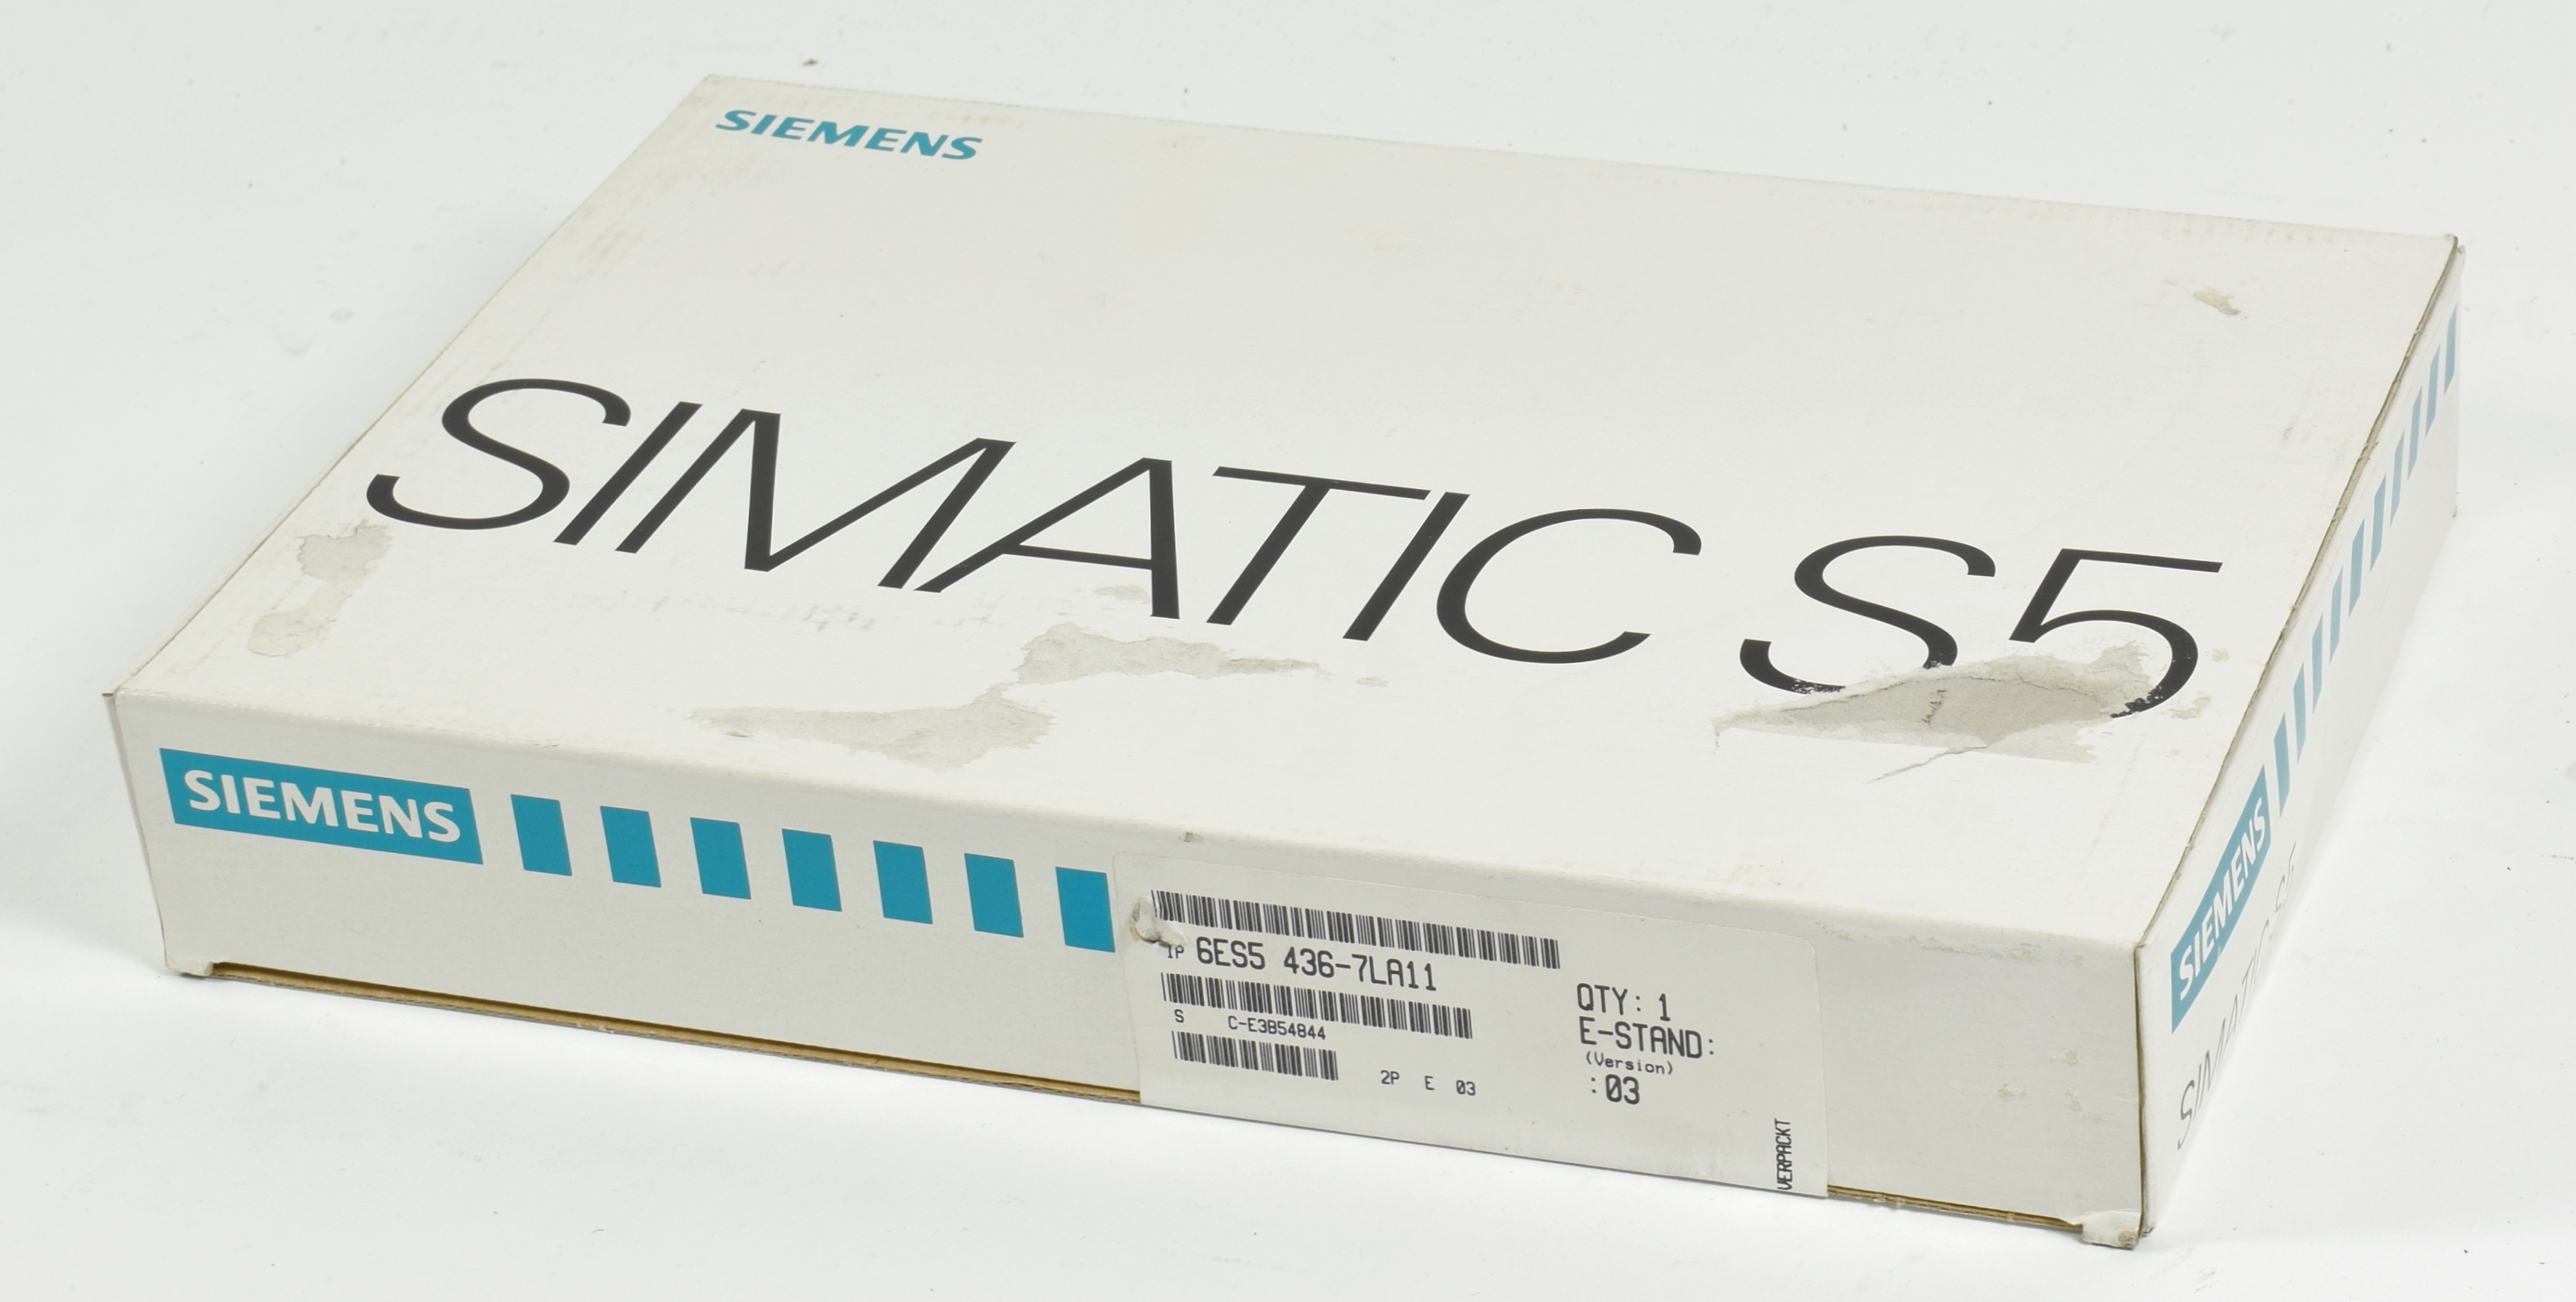 Siemens Simatic S5 Digital IN,6ES5 436-7LA11,6ES5436-7LA11,E:03 115er  Reihe Siemens Simatic S5 Siemens Manufacturers Päbra Gmbh